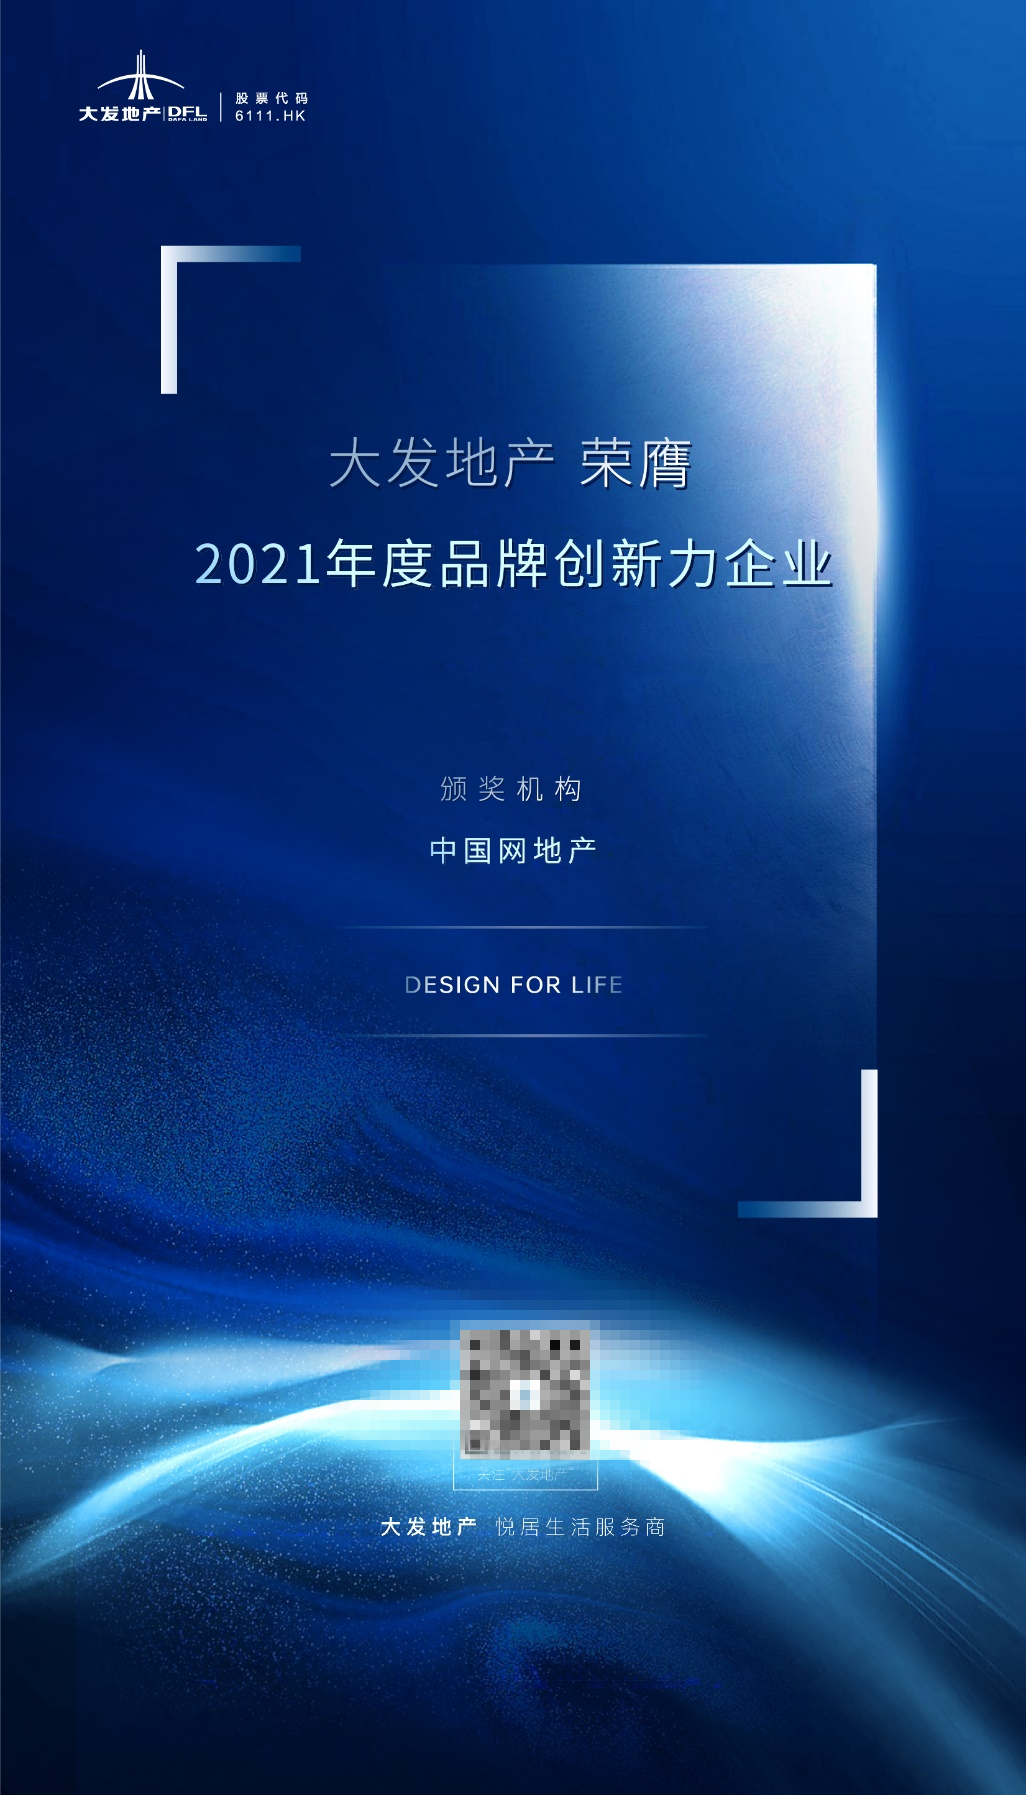  大发地产荣膺“2021年度品牌创新力企业”殊荣_中国网地产